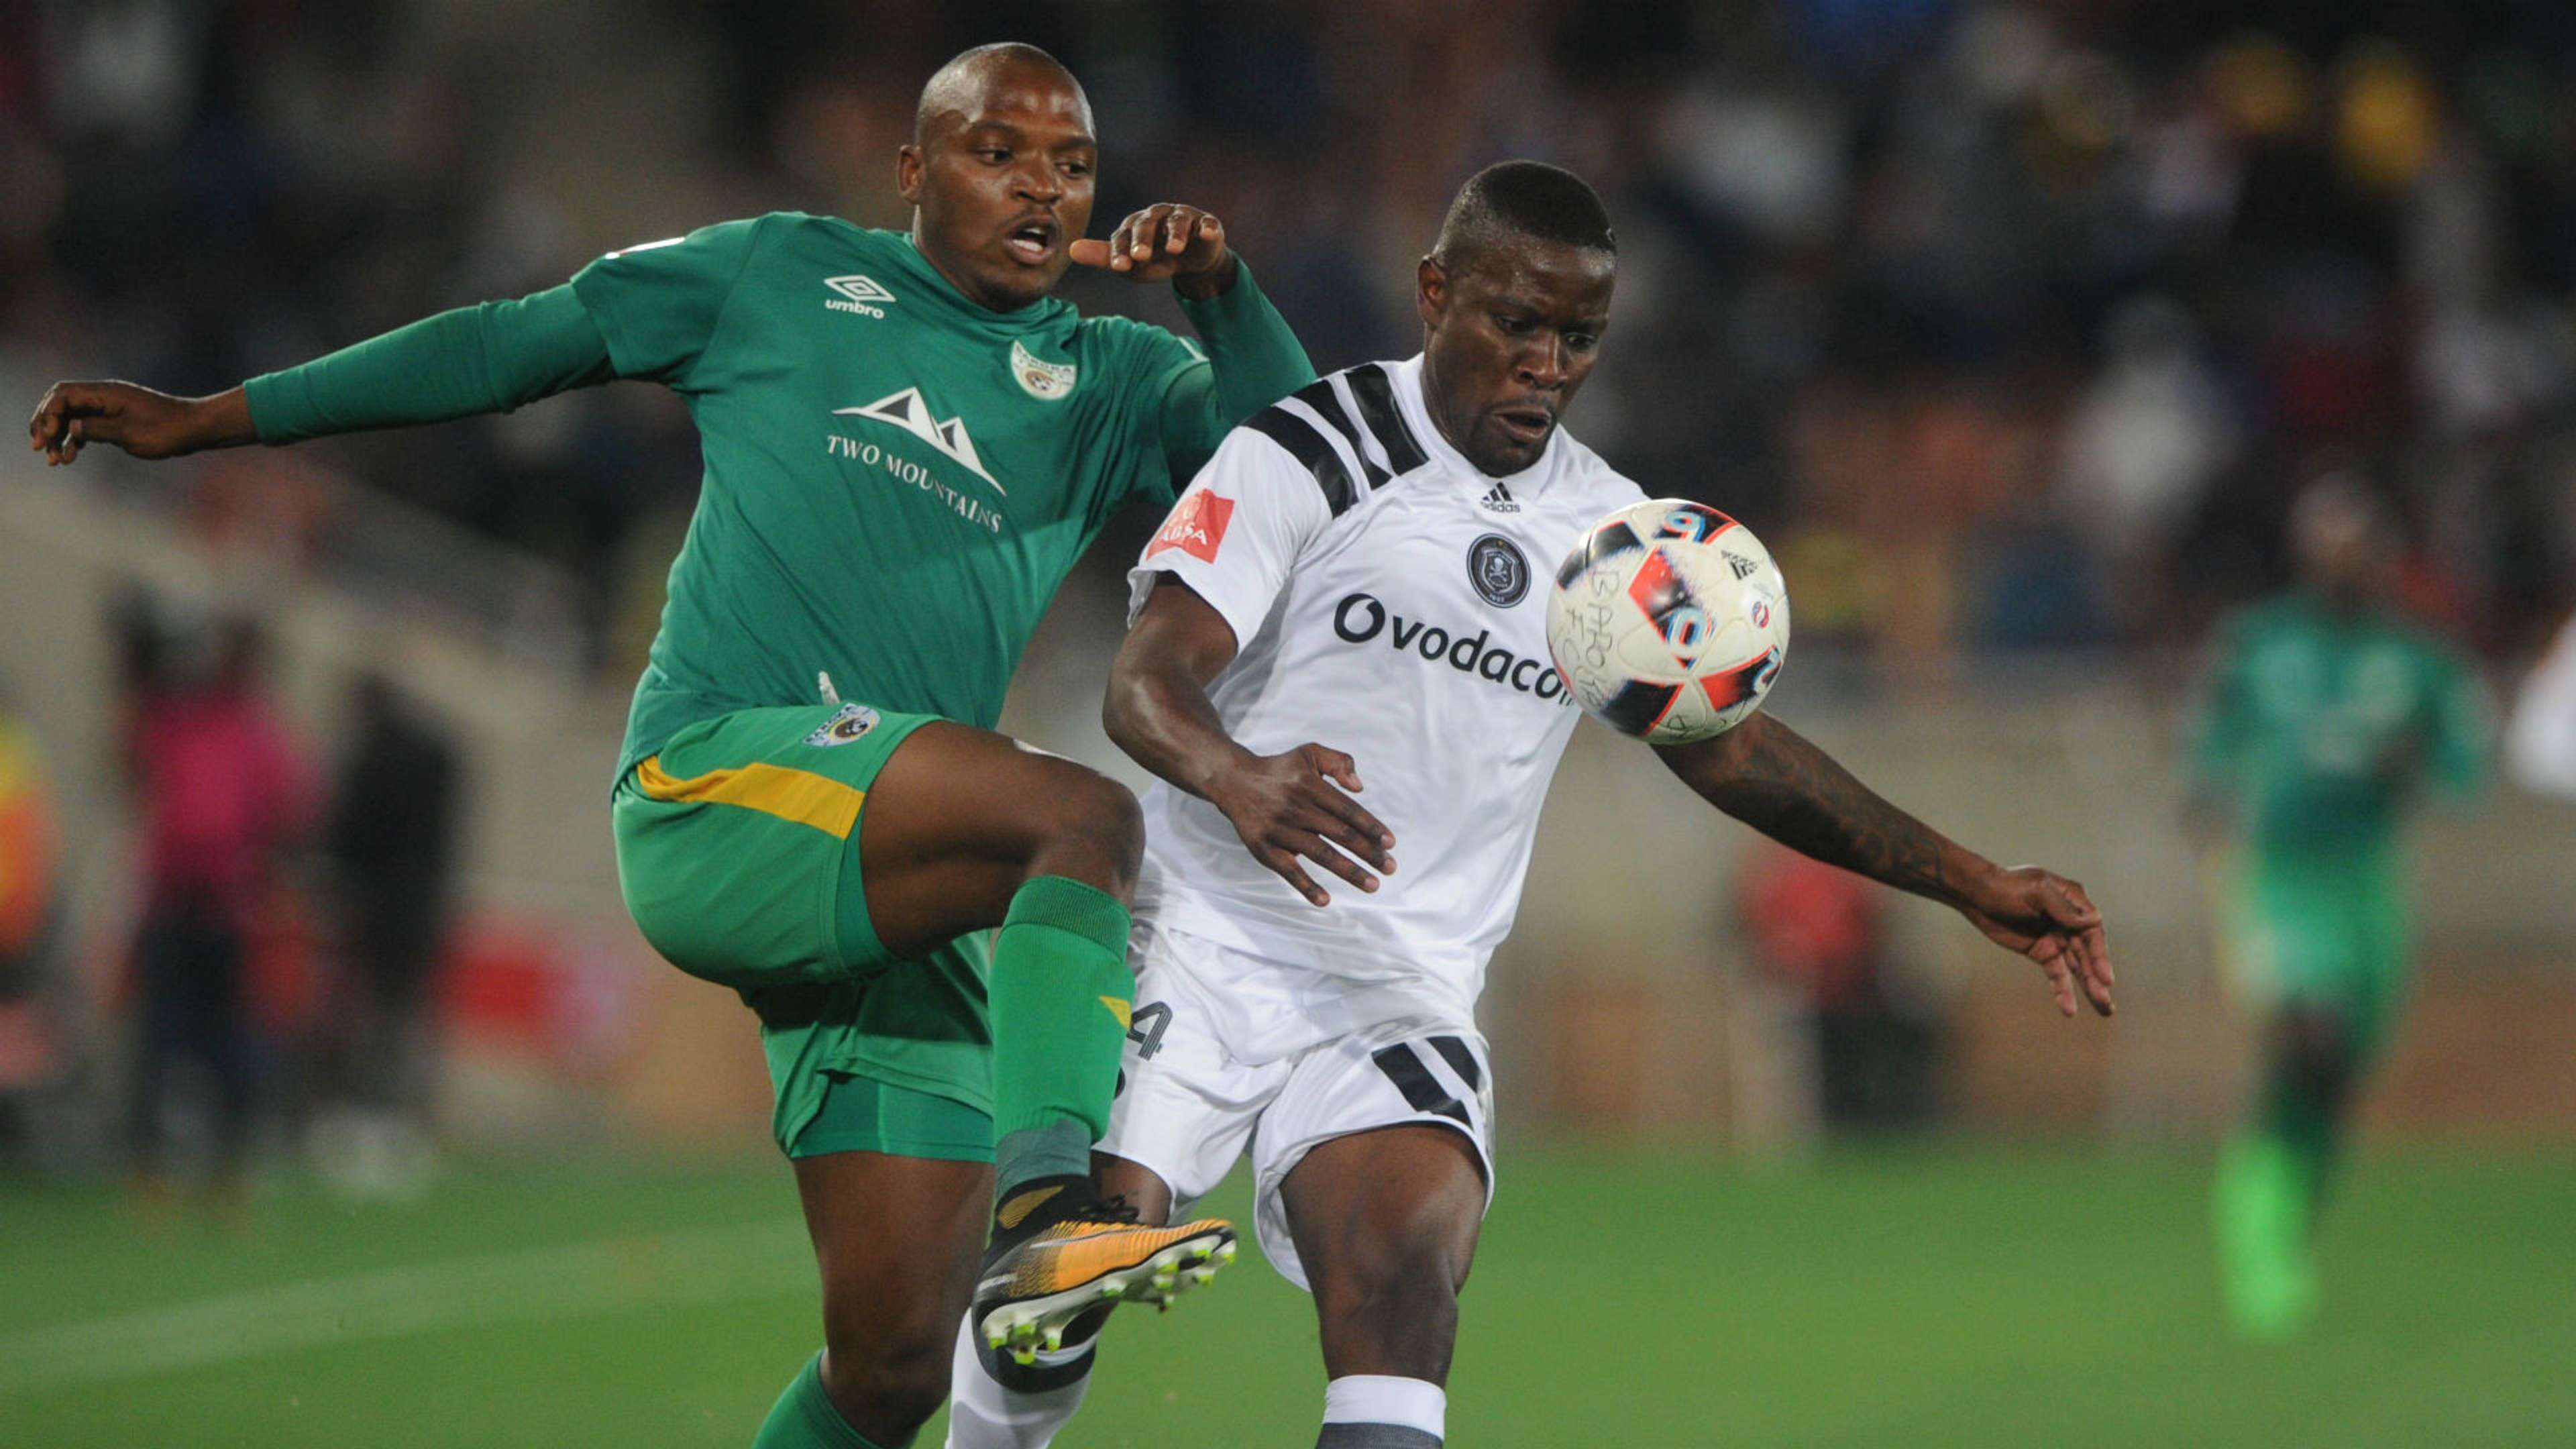 Ntsikelelo Nyauza of Orlando Pirates is challenged by Gift Motupa of Baroka FC